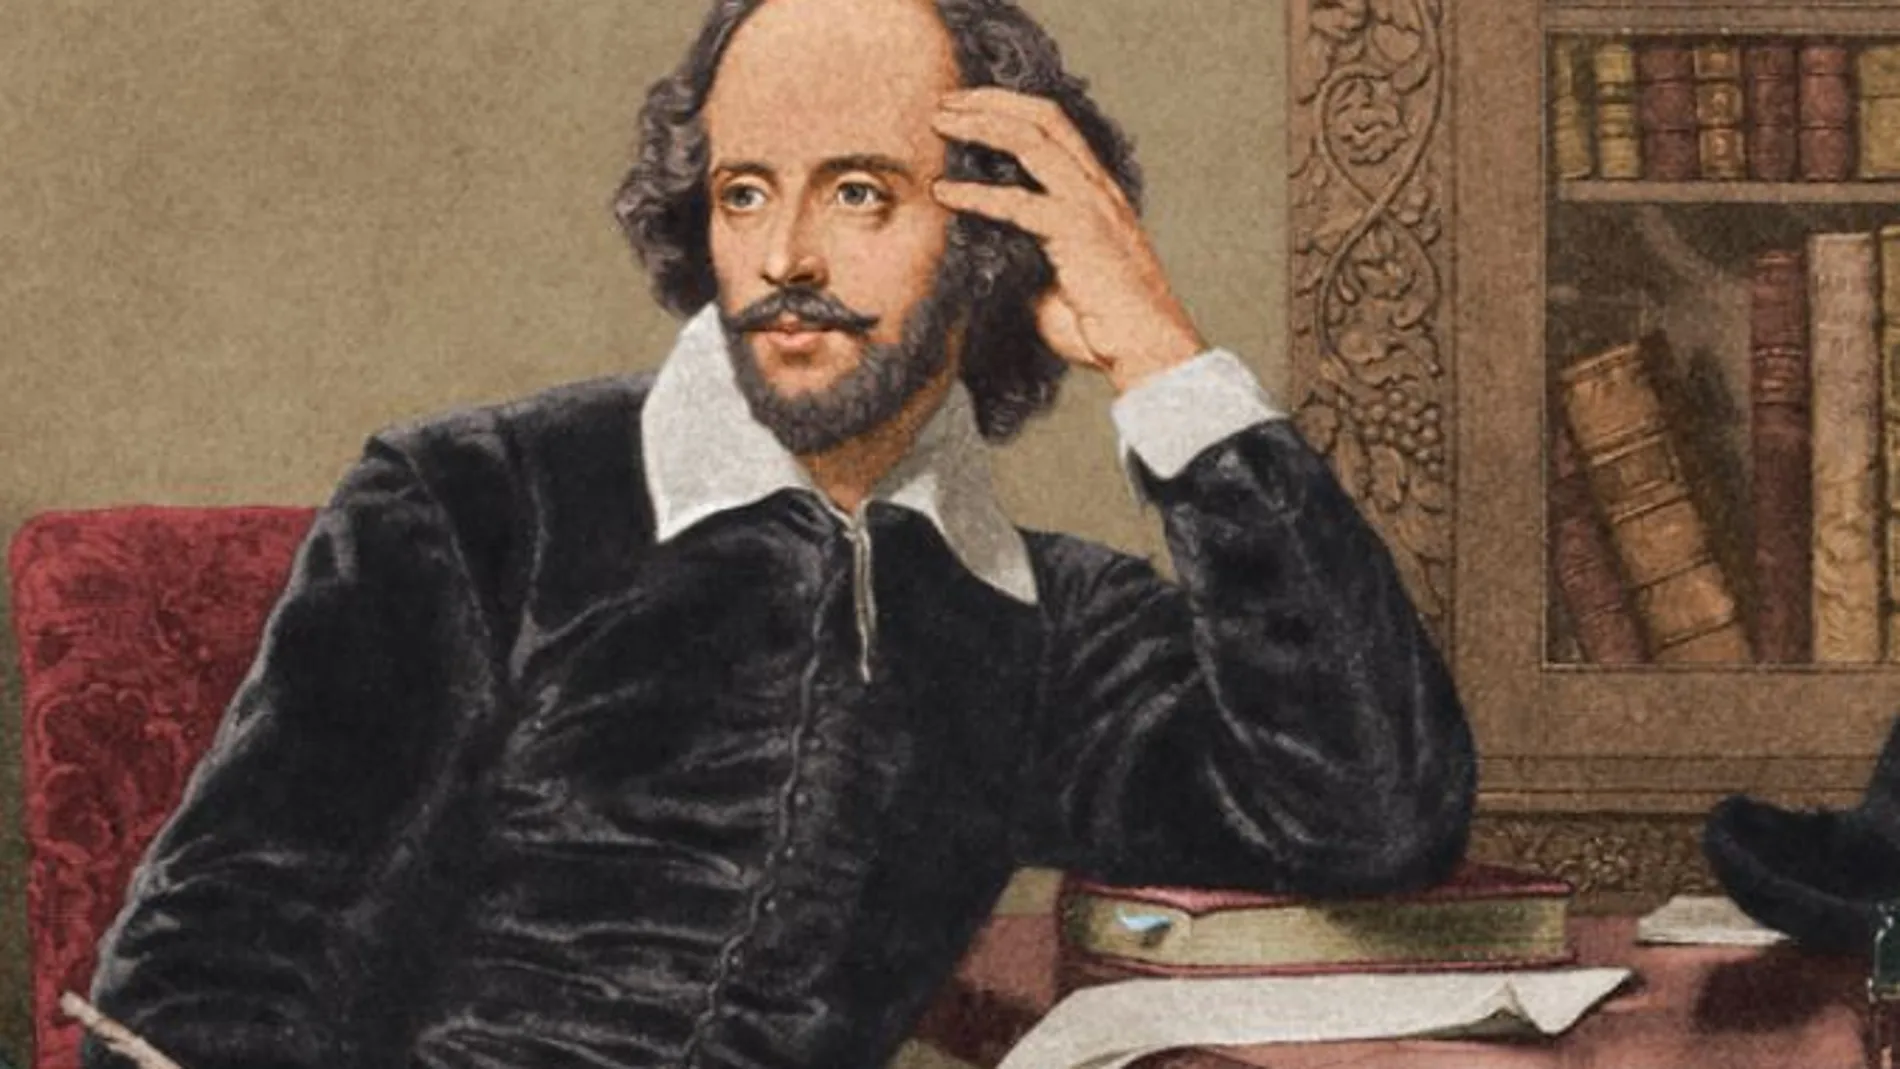 Hamnet, el hijo olvidado de Shakespeare al que dedicó su mayor obra